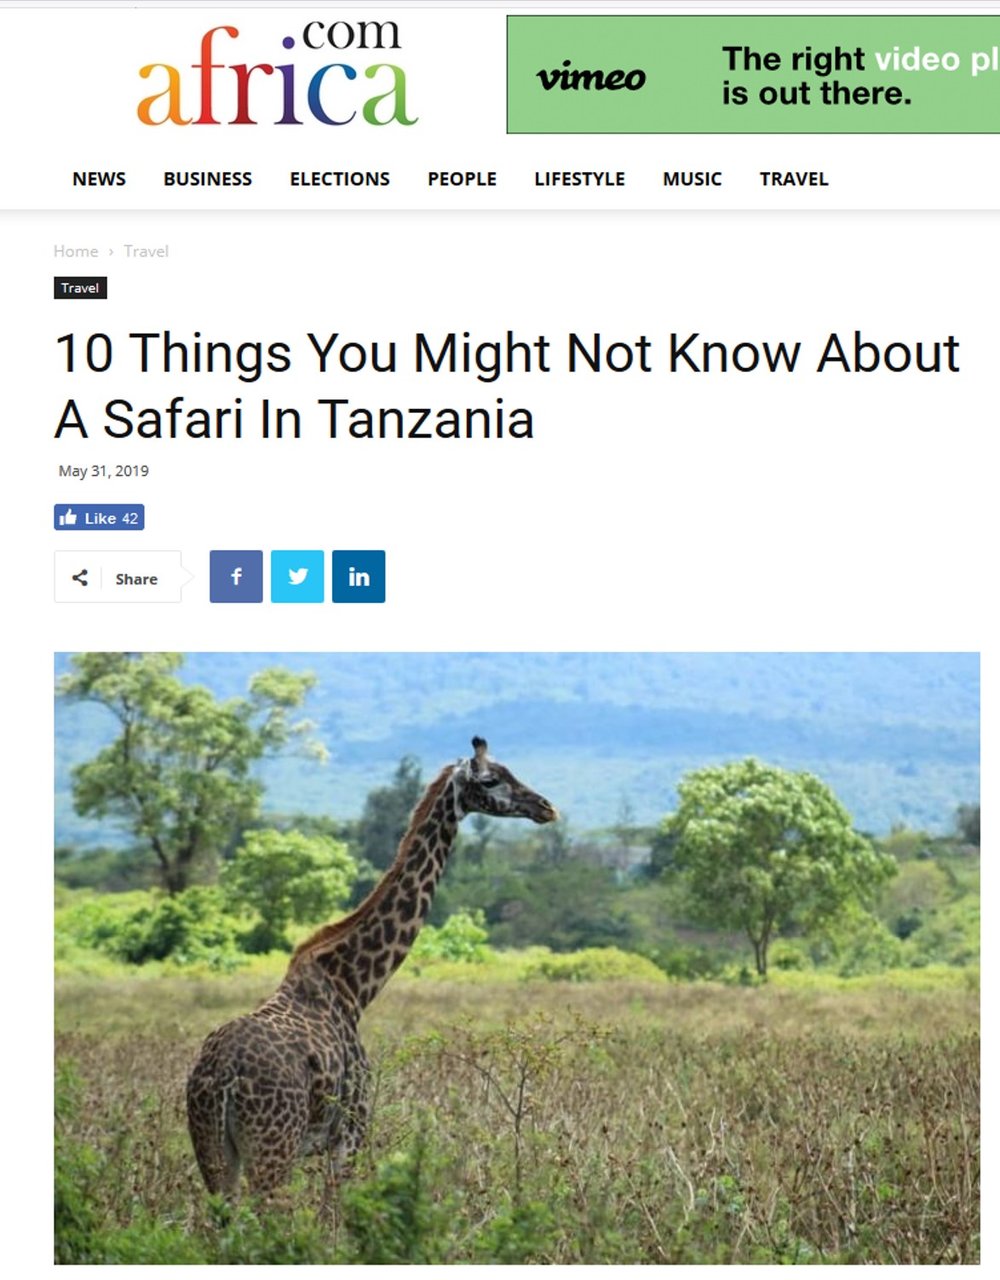 Ein paar nützliche Dinge, die Sie wissen sollten, wenn sie eine Safari in Tansania planen